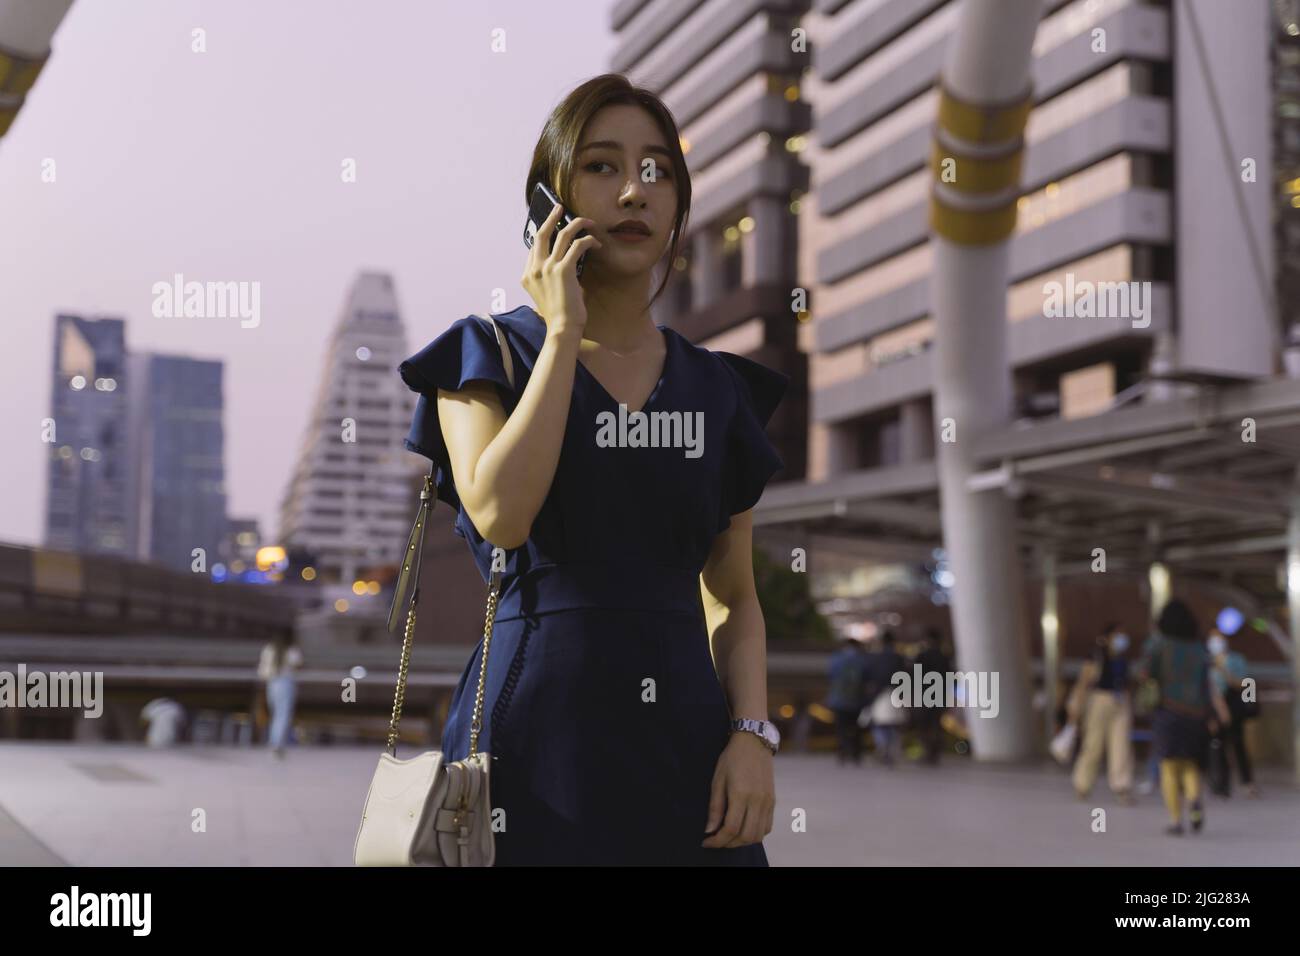 Erfolgreiche und intelligente junge asiatische Frau in legerer Kleidung wartet auf jemanden und telefoniert in der Stadt Straße während des Abends Stockfoto